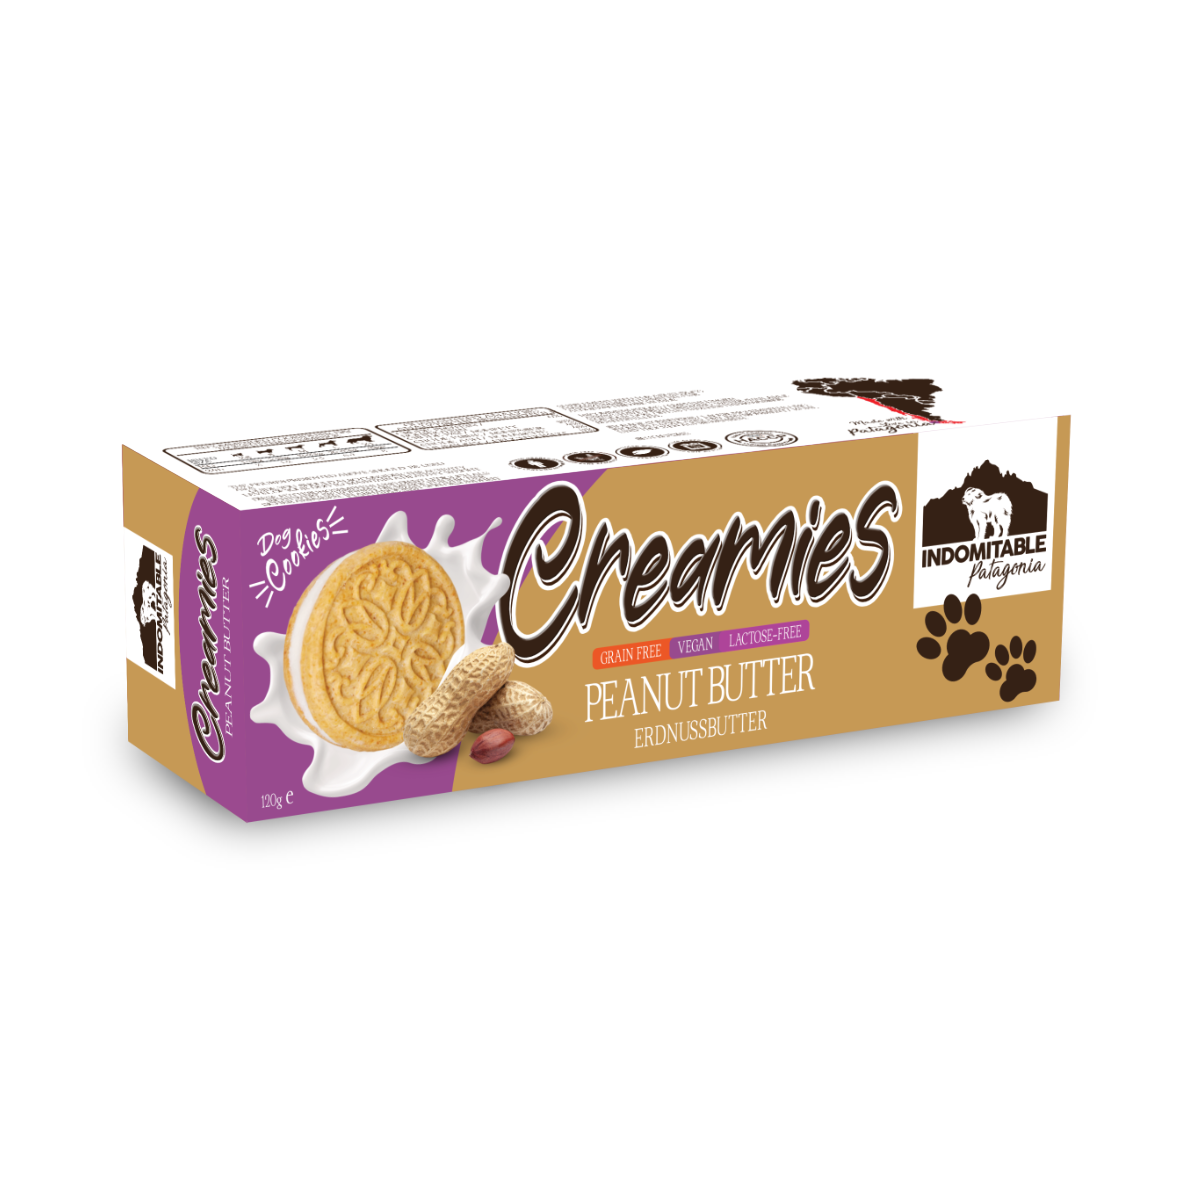 Creamies Erdnussbutter